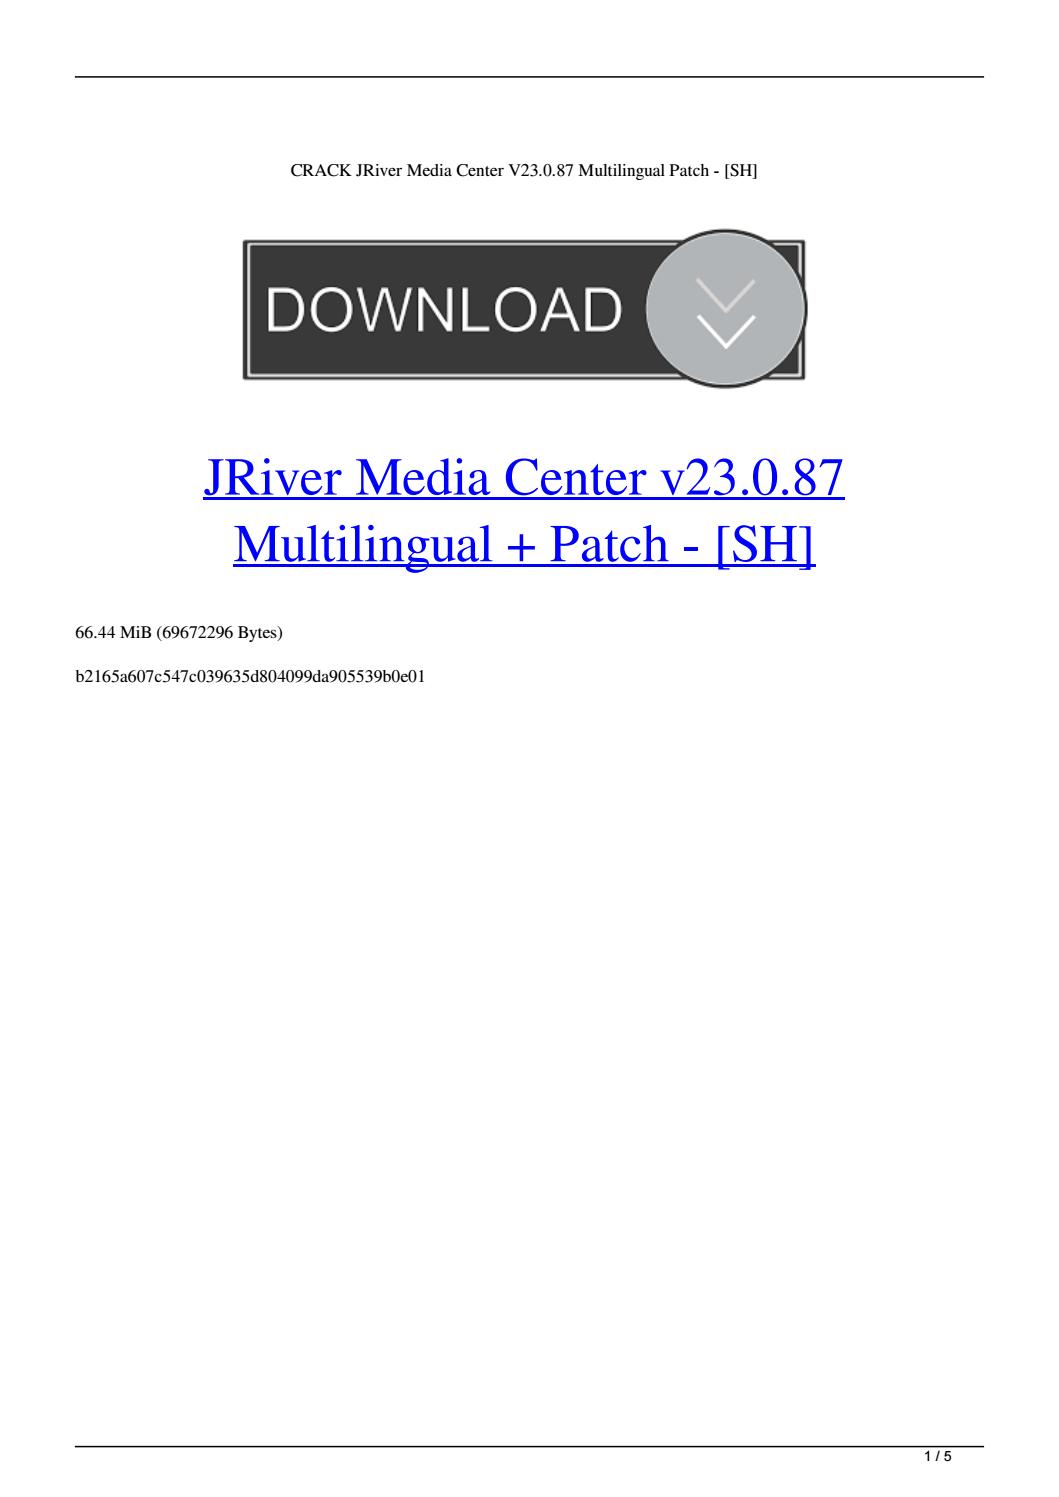 download jriver media center 30.0.89